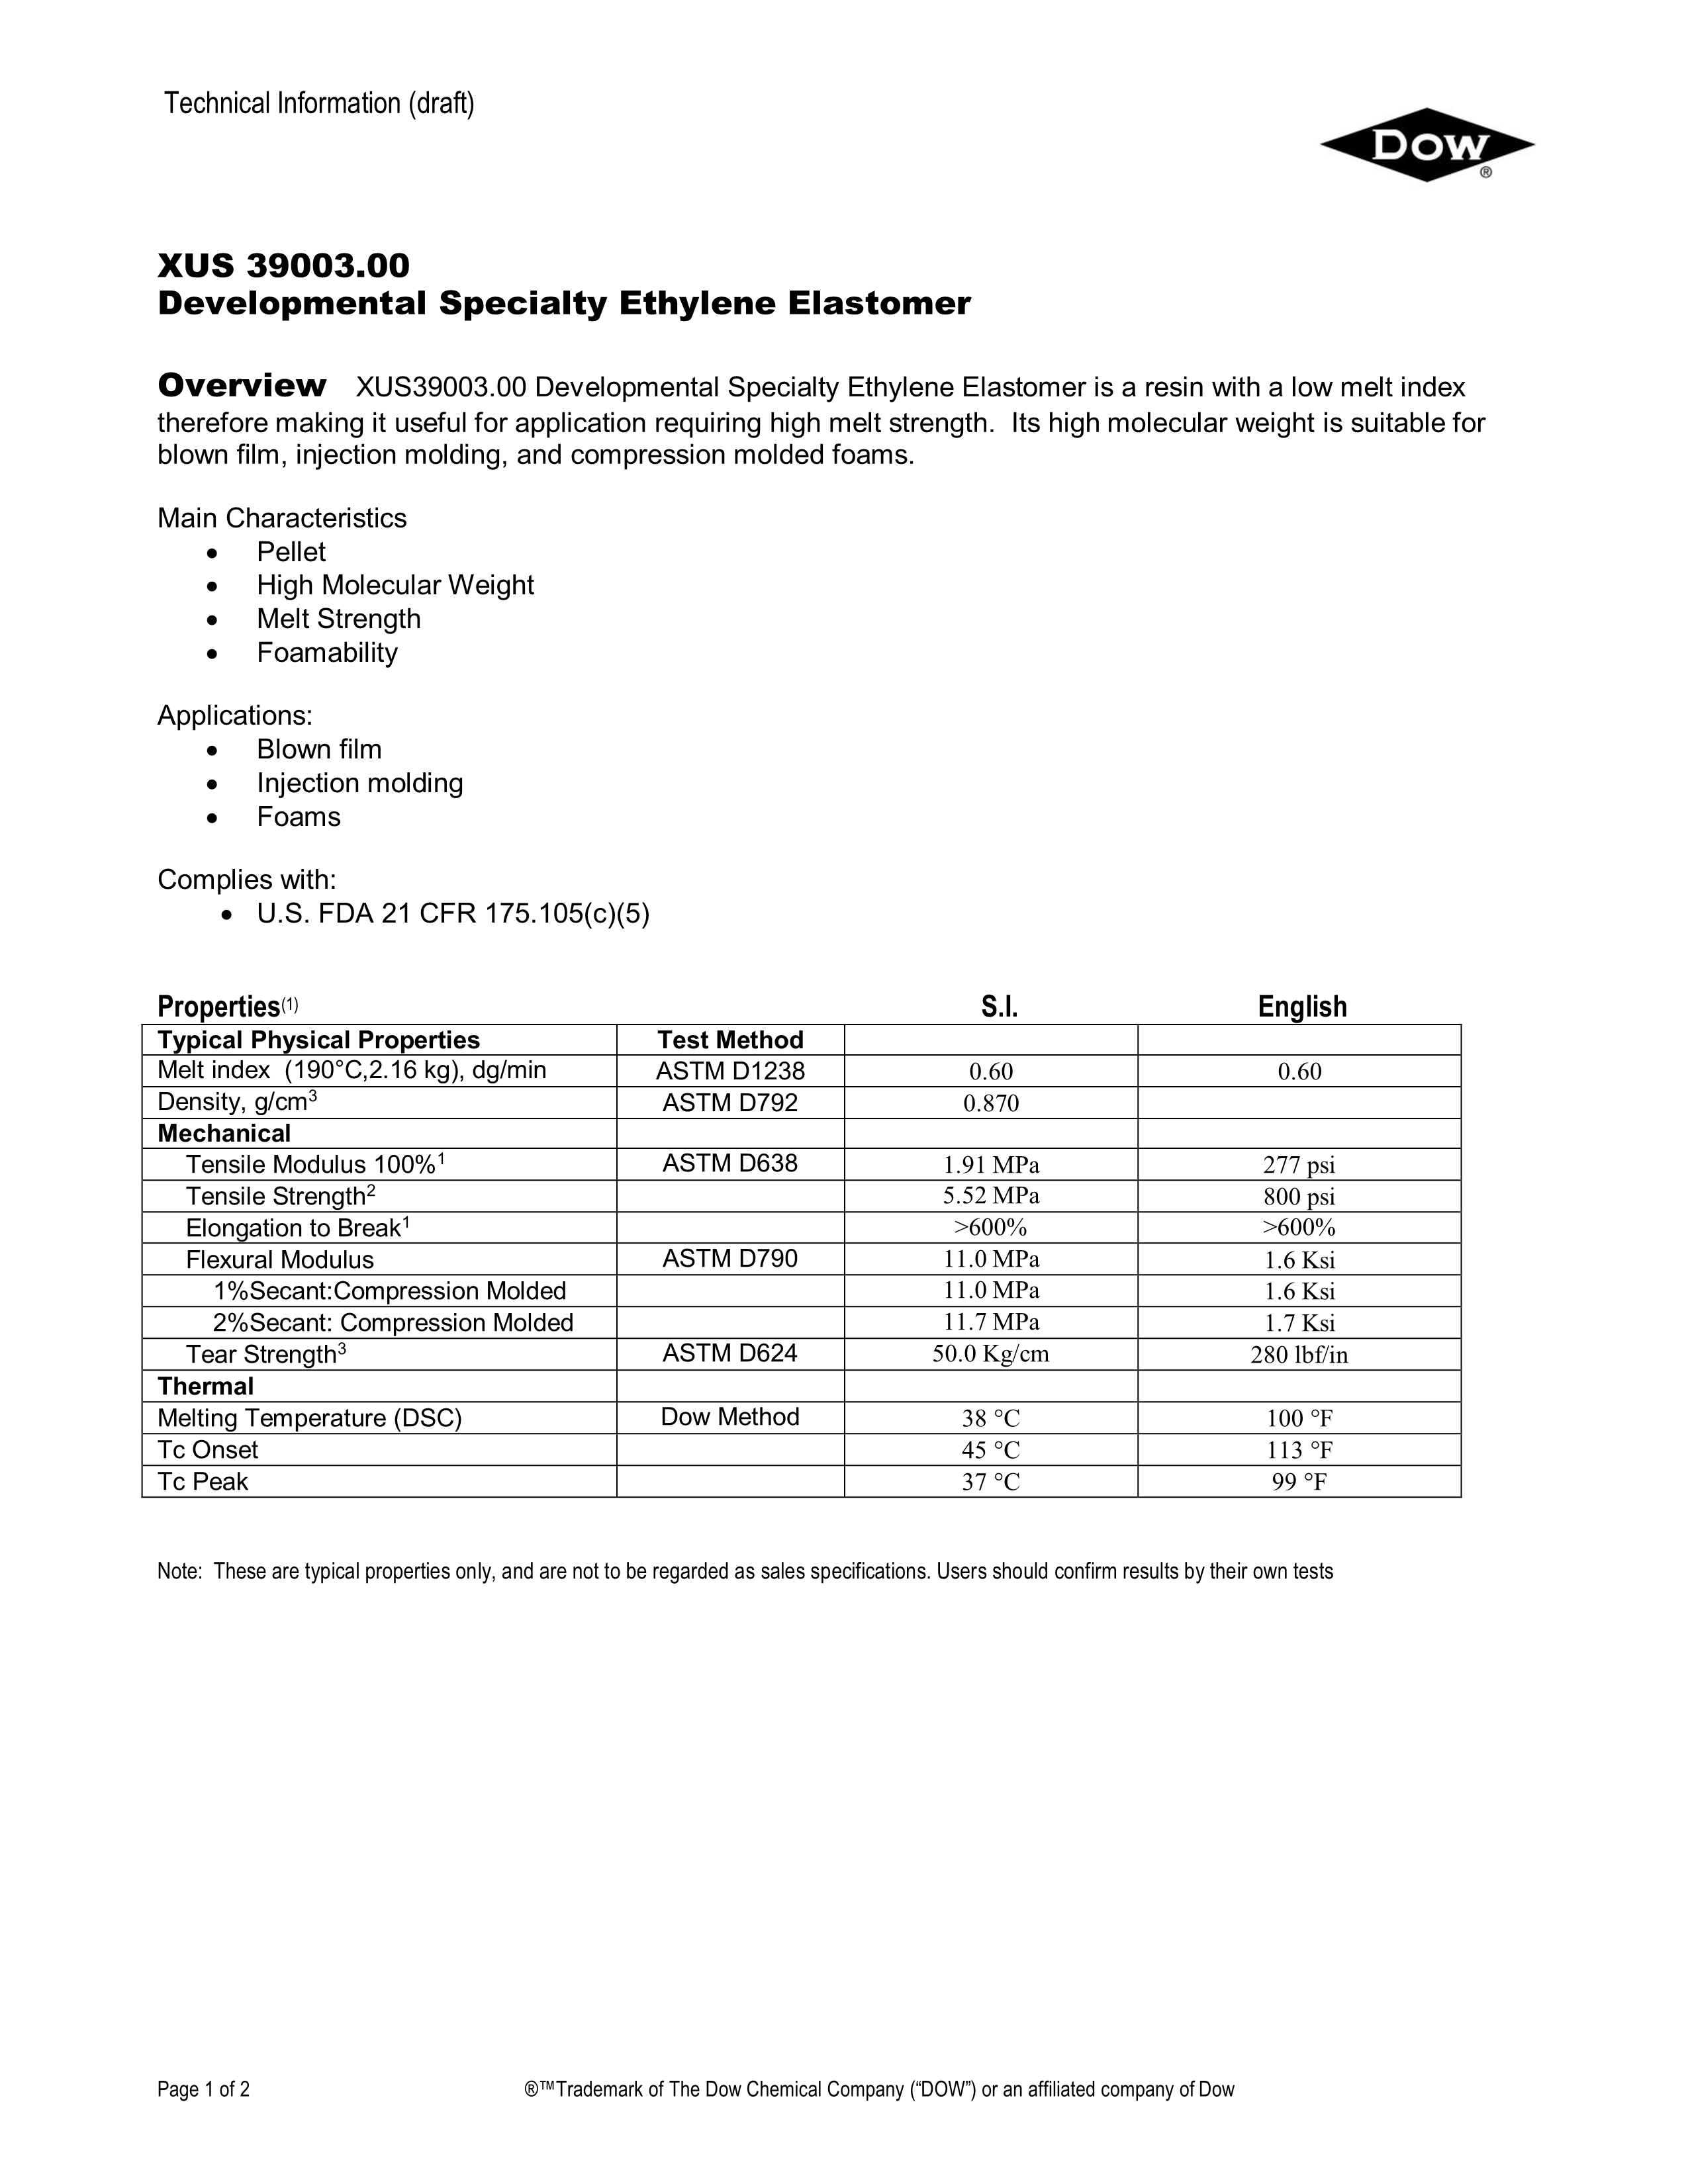 XUS39003.00 Technical Data Sheet_1.jpg